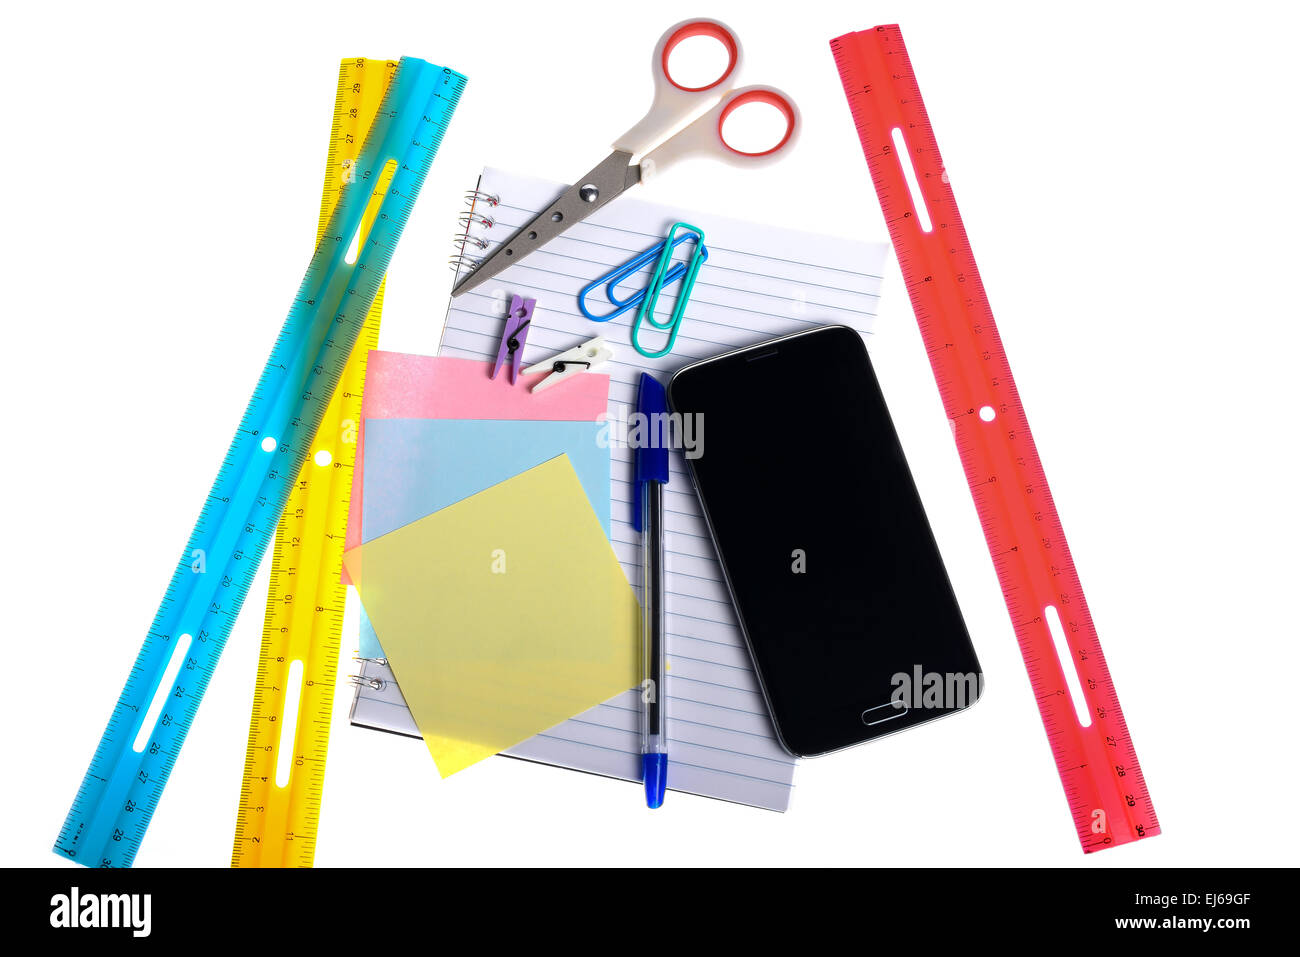 Vielzahl von Schreibwaren und ein Smartphone isoliert auf weißem Hintergrund Stockfoto